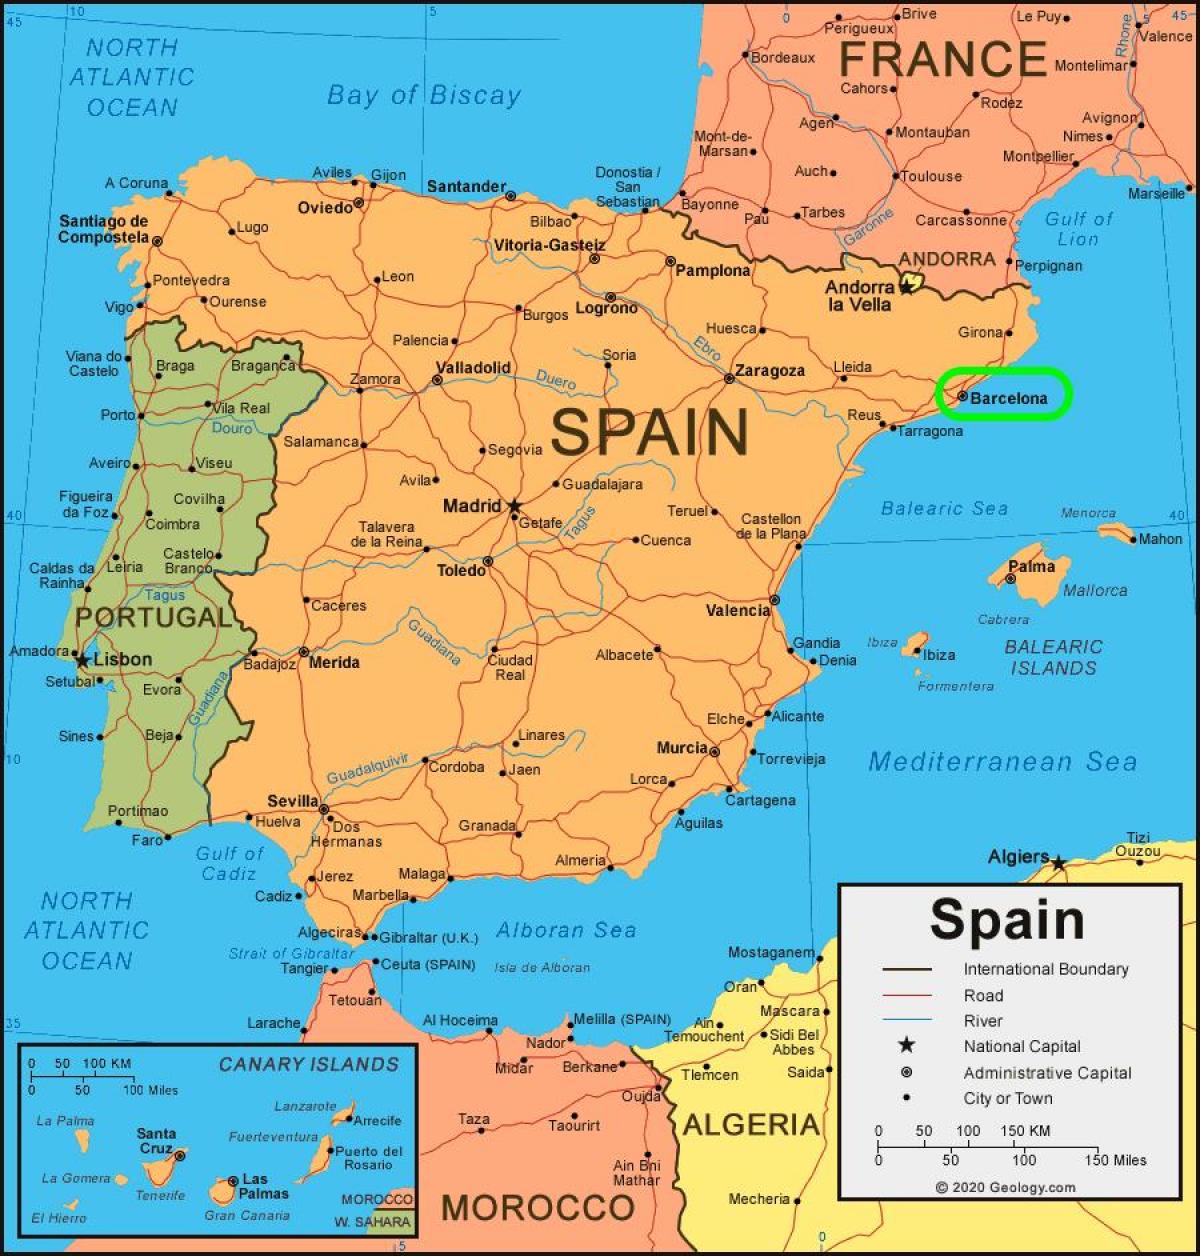 O Barcelona No Mapa Mapa De Barcelona No Mapa Catalunha Espanha